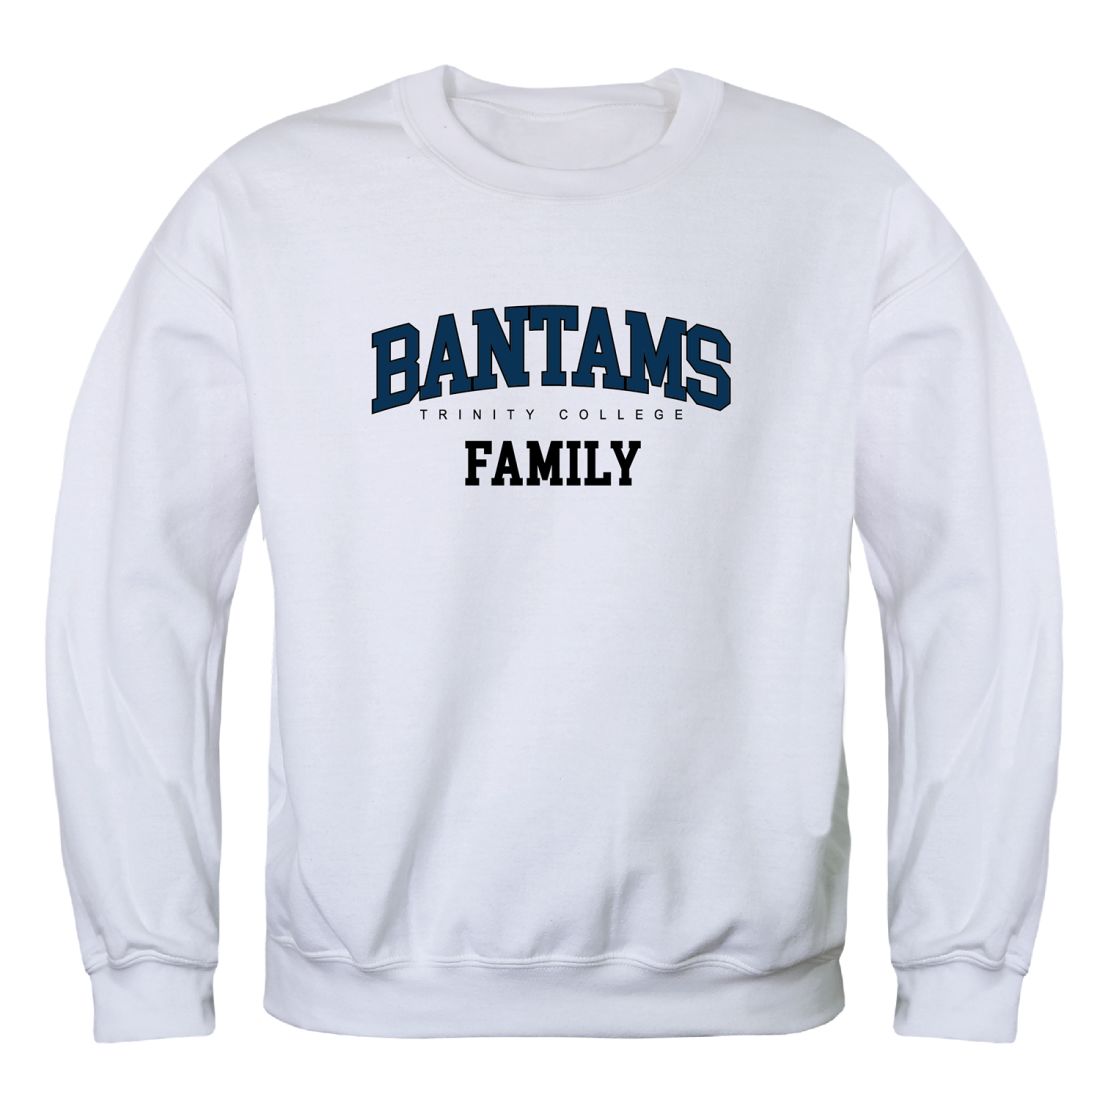 Trinity-College-Bantams-Family-Fleece-Crewneck-Pullover-Sweatshirt